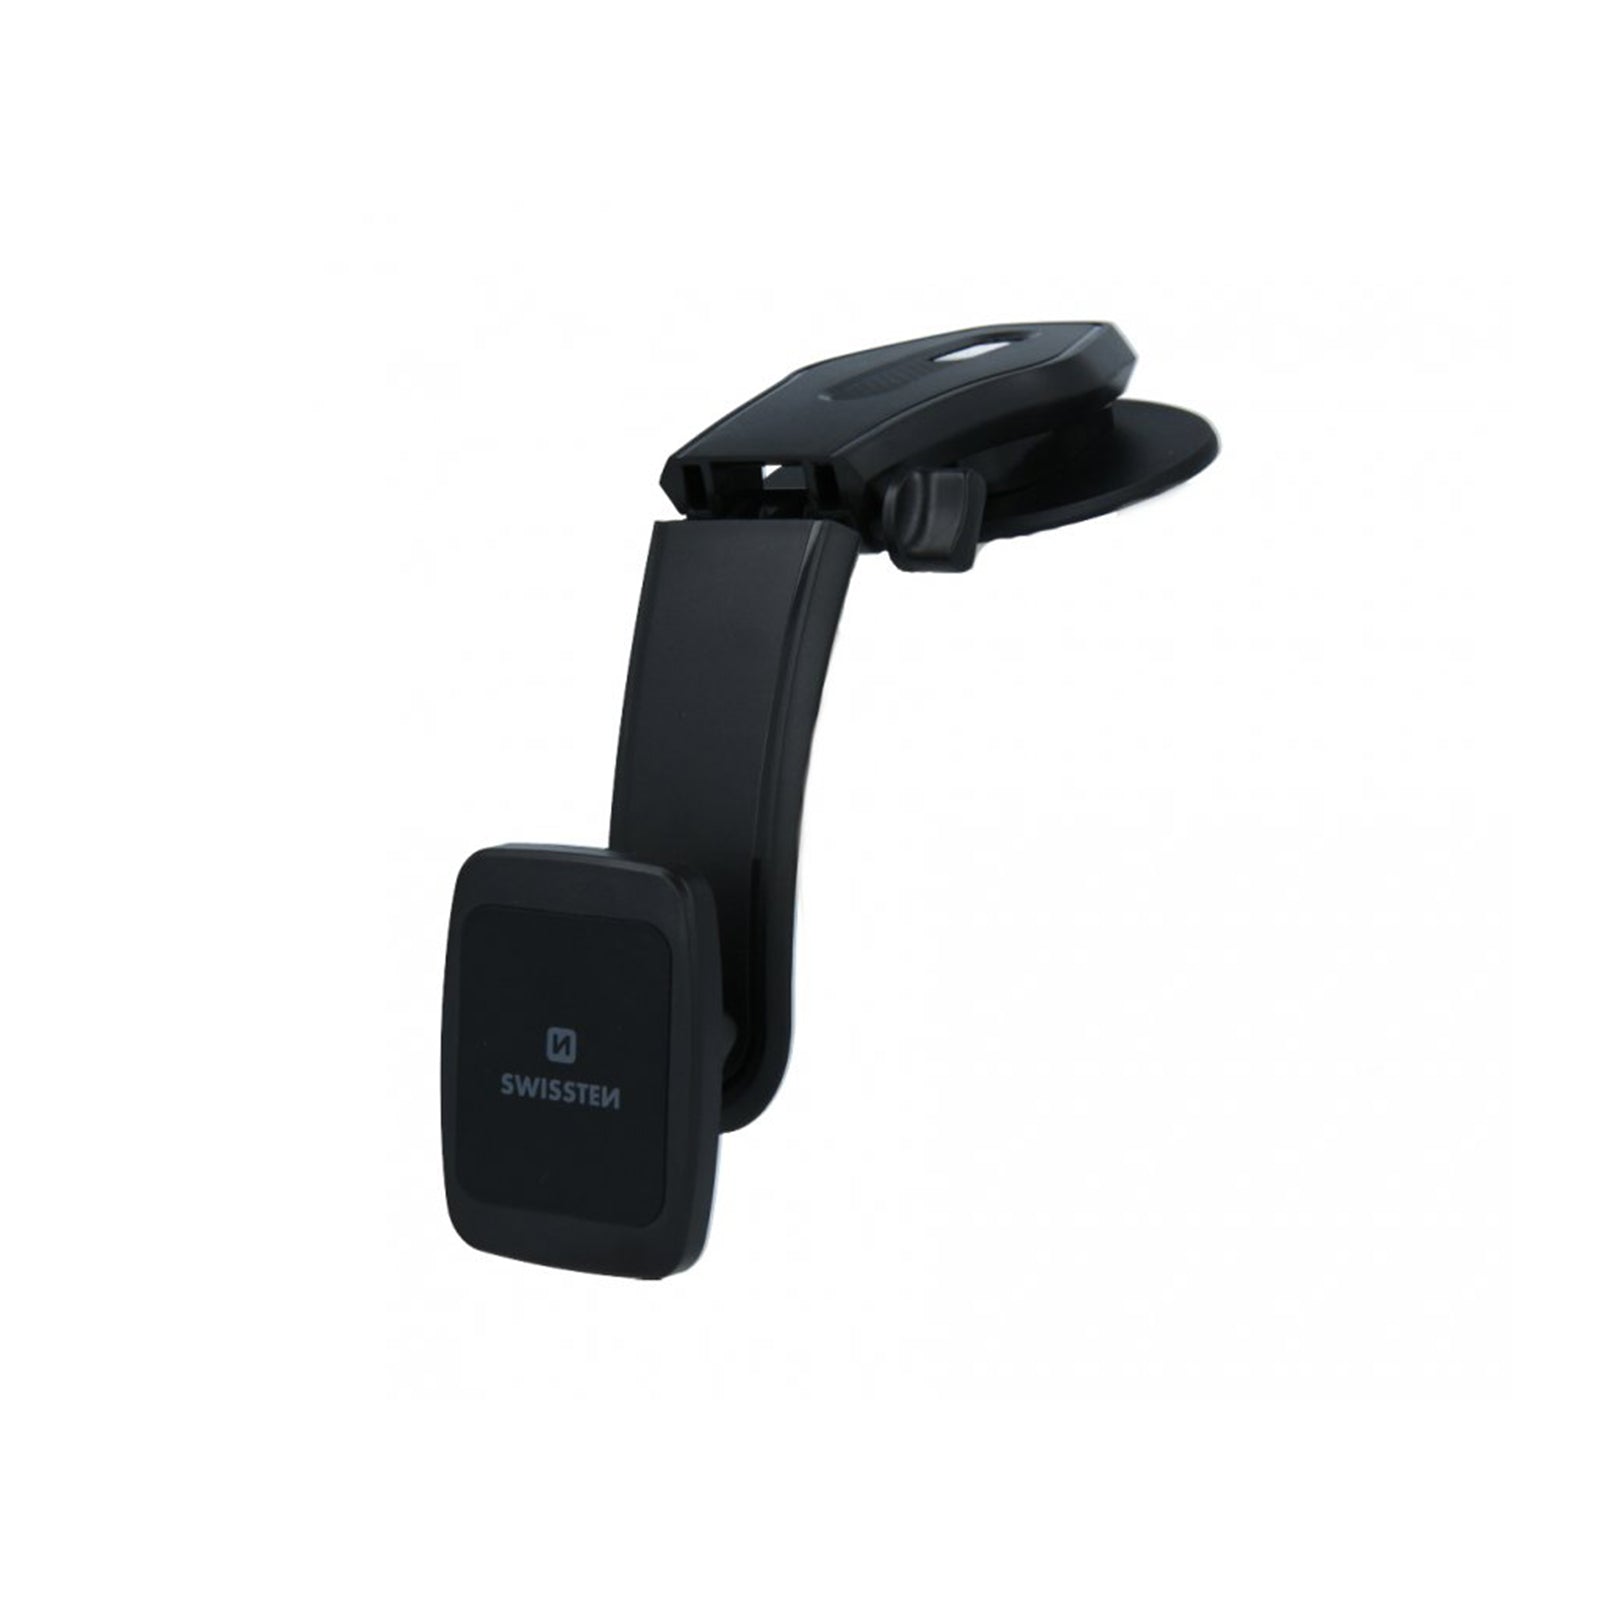 Swissten - Support magnétique pour téléphone portable (accessoire voiture) - S-Grip M5-R1